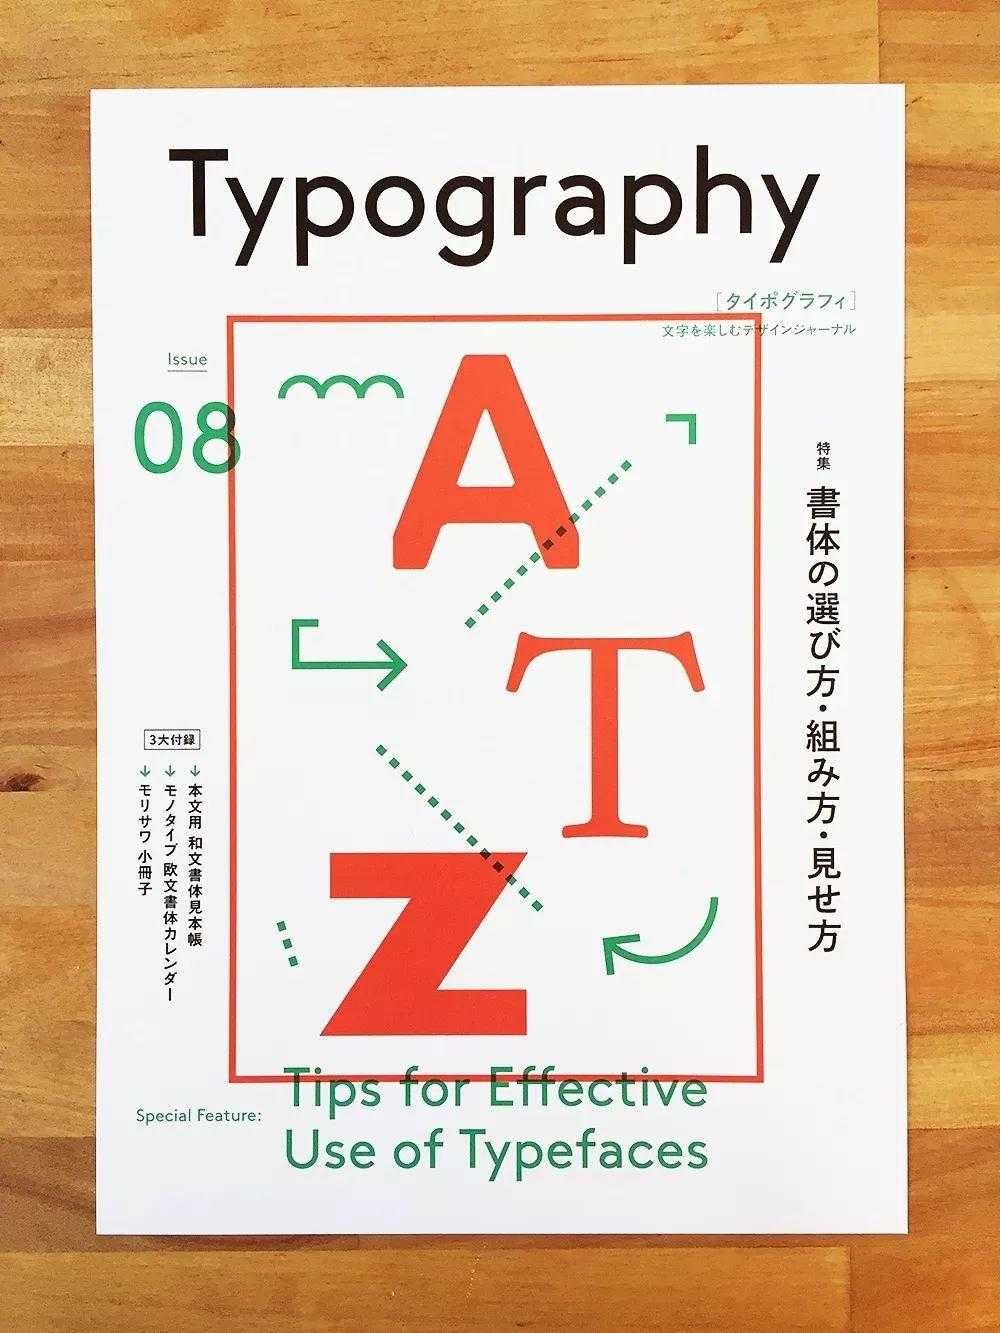 分享一组日本的海报设计 字体排版非常不错